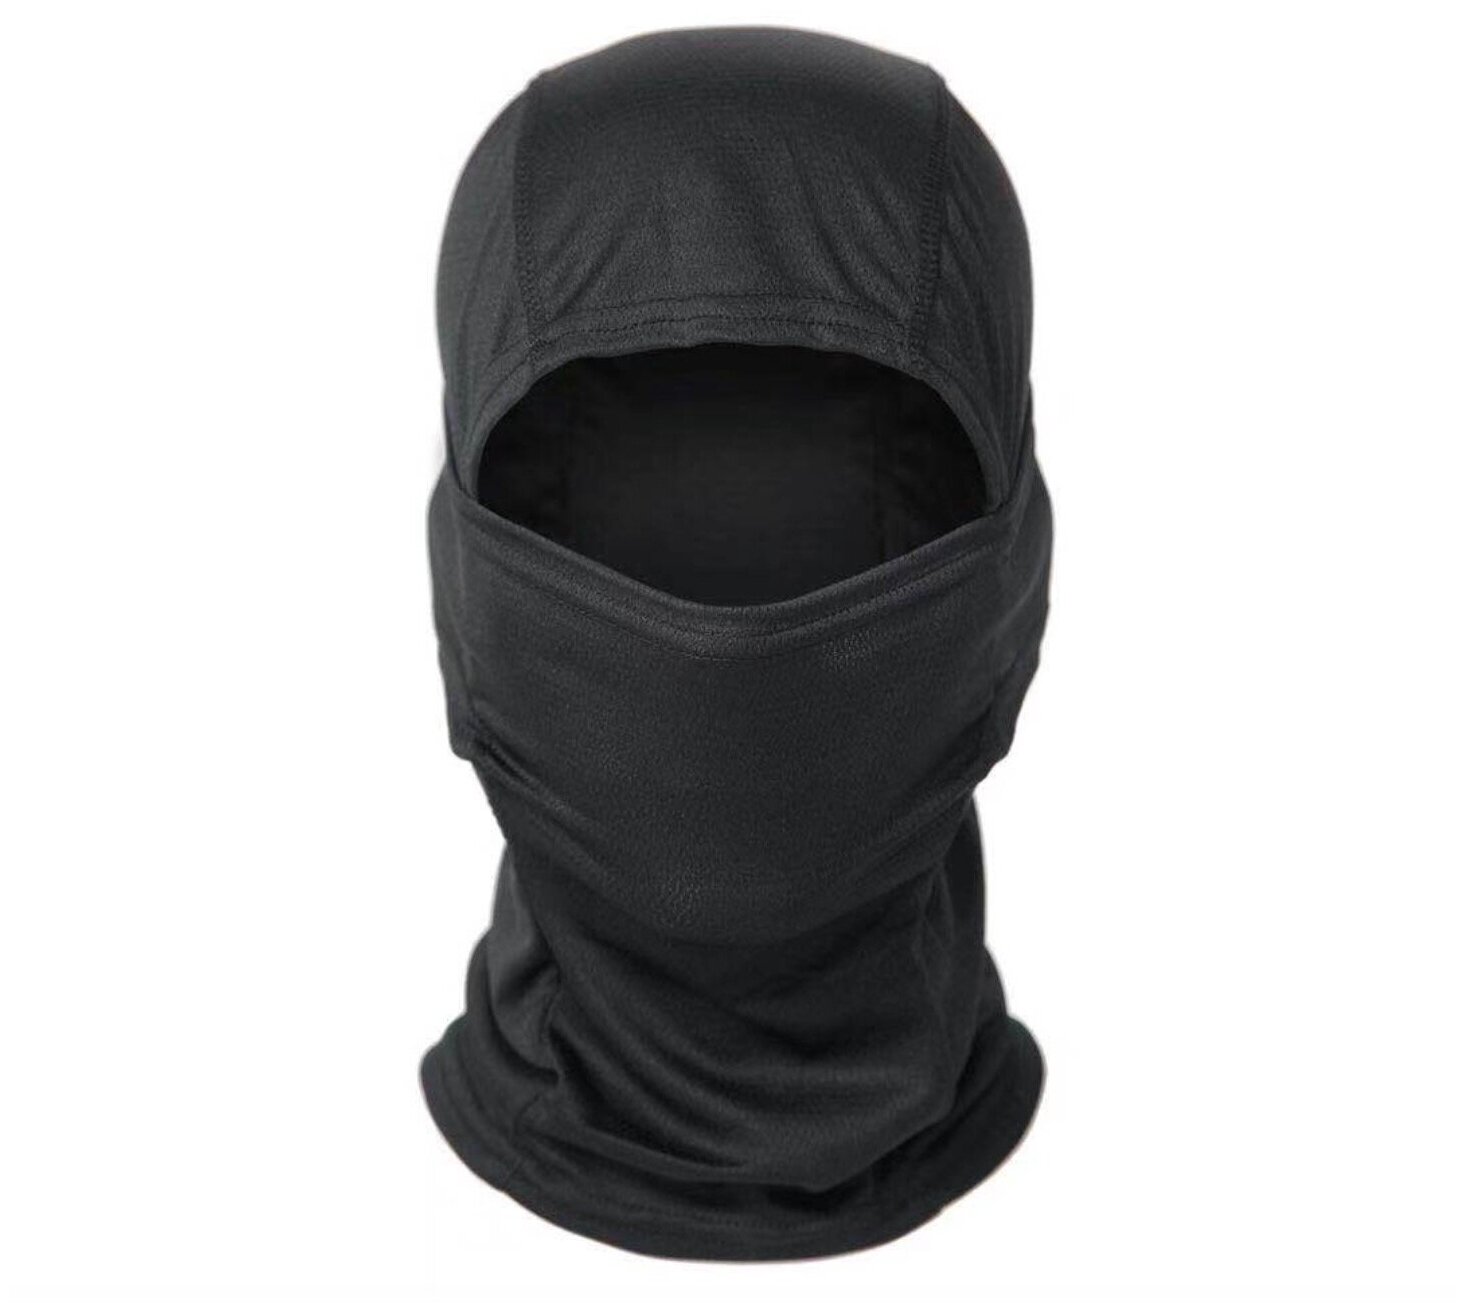 Тактическая черная маска балаклава бафф для головы/лица MyPads M-232105 головной убор под шлем каску ветрозащитная солнцезащитная пылезащитная.